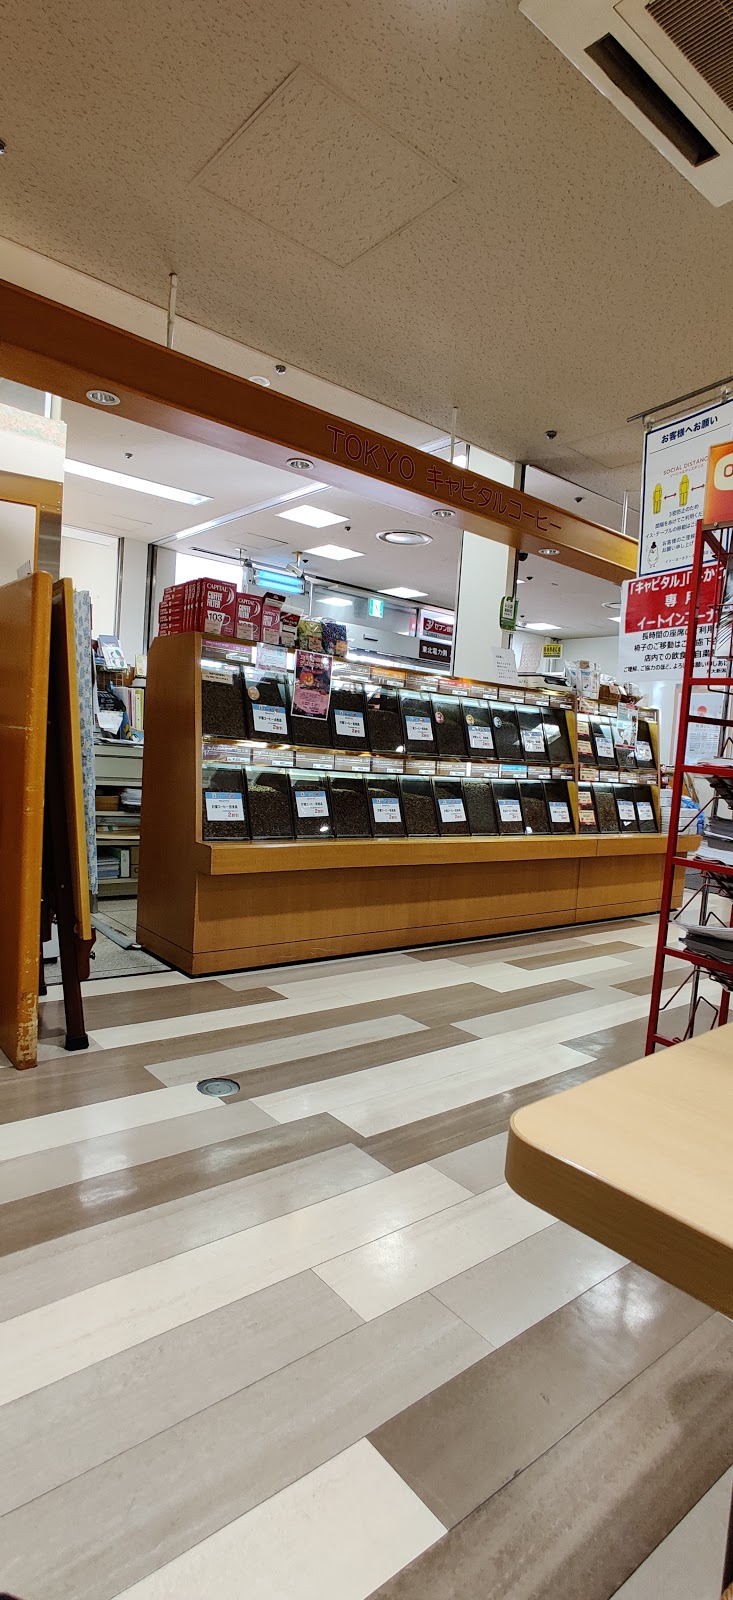 キャピタルコーヒー 新潟丸大店